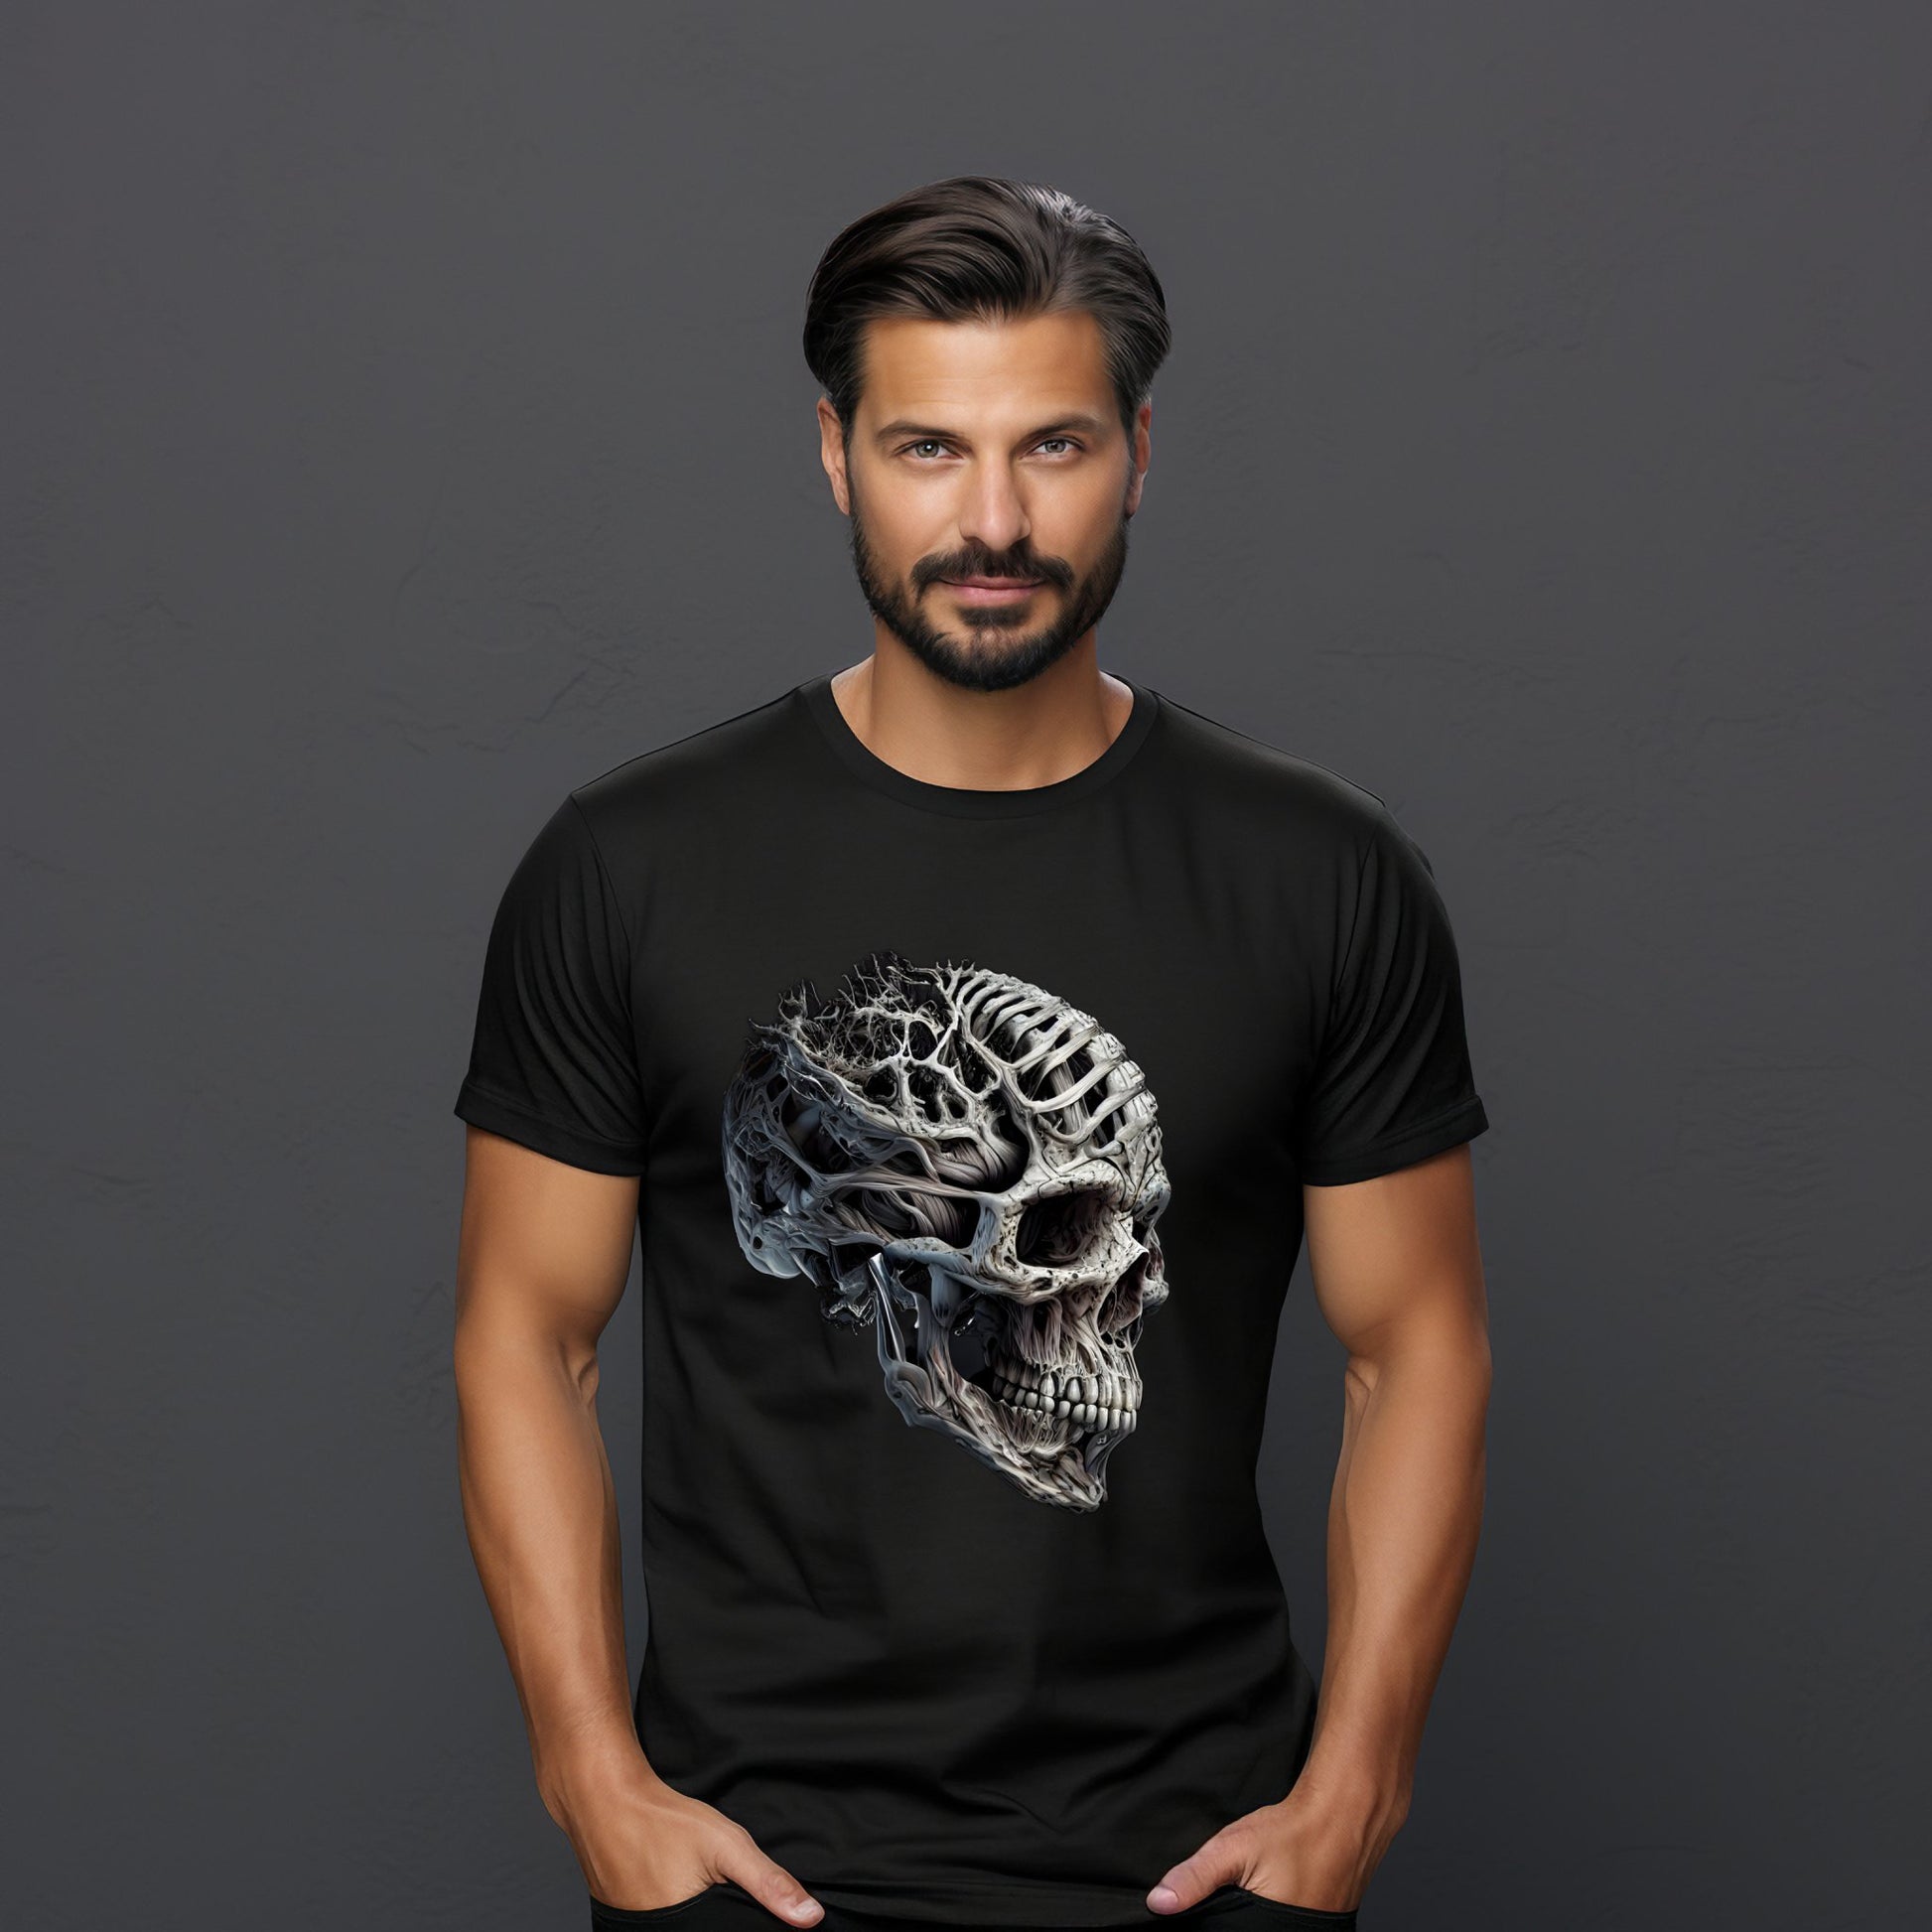 Vyriški marškinėliai “Ancient Skull” su senoviniu kaukolės dizainu, idealiai tinkantys istorijos entuziastams ir unikalių stilių mėgėjams, Designedbyme.lt produktas, Vyriški marškinėliai,Visi produktai